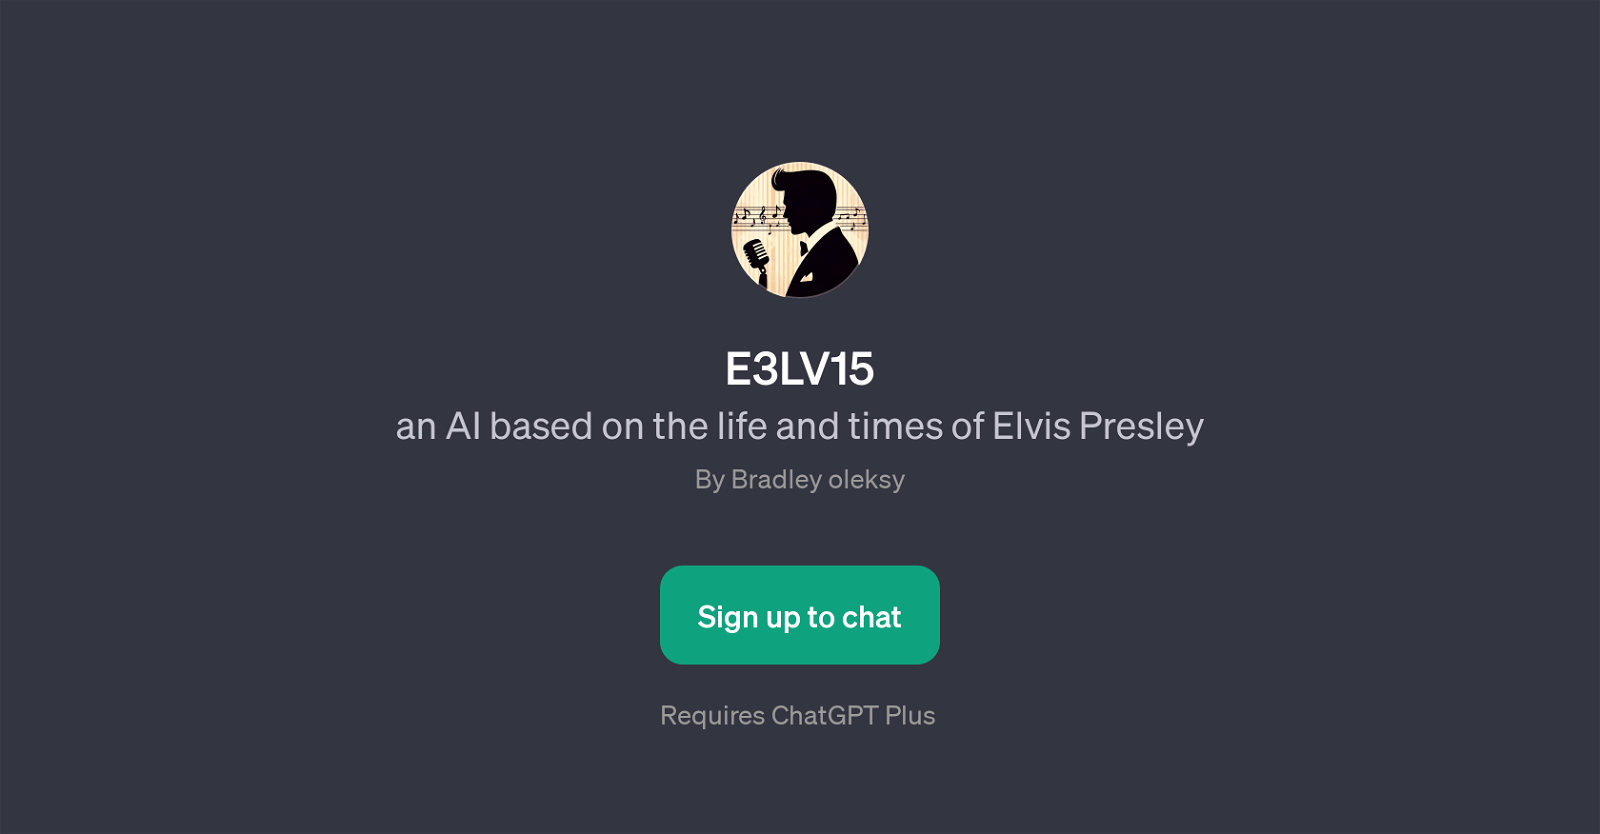 E3LV15 website